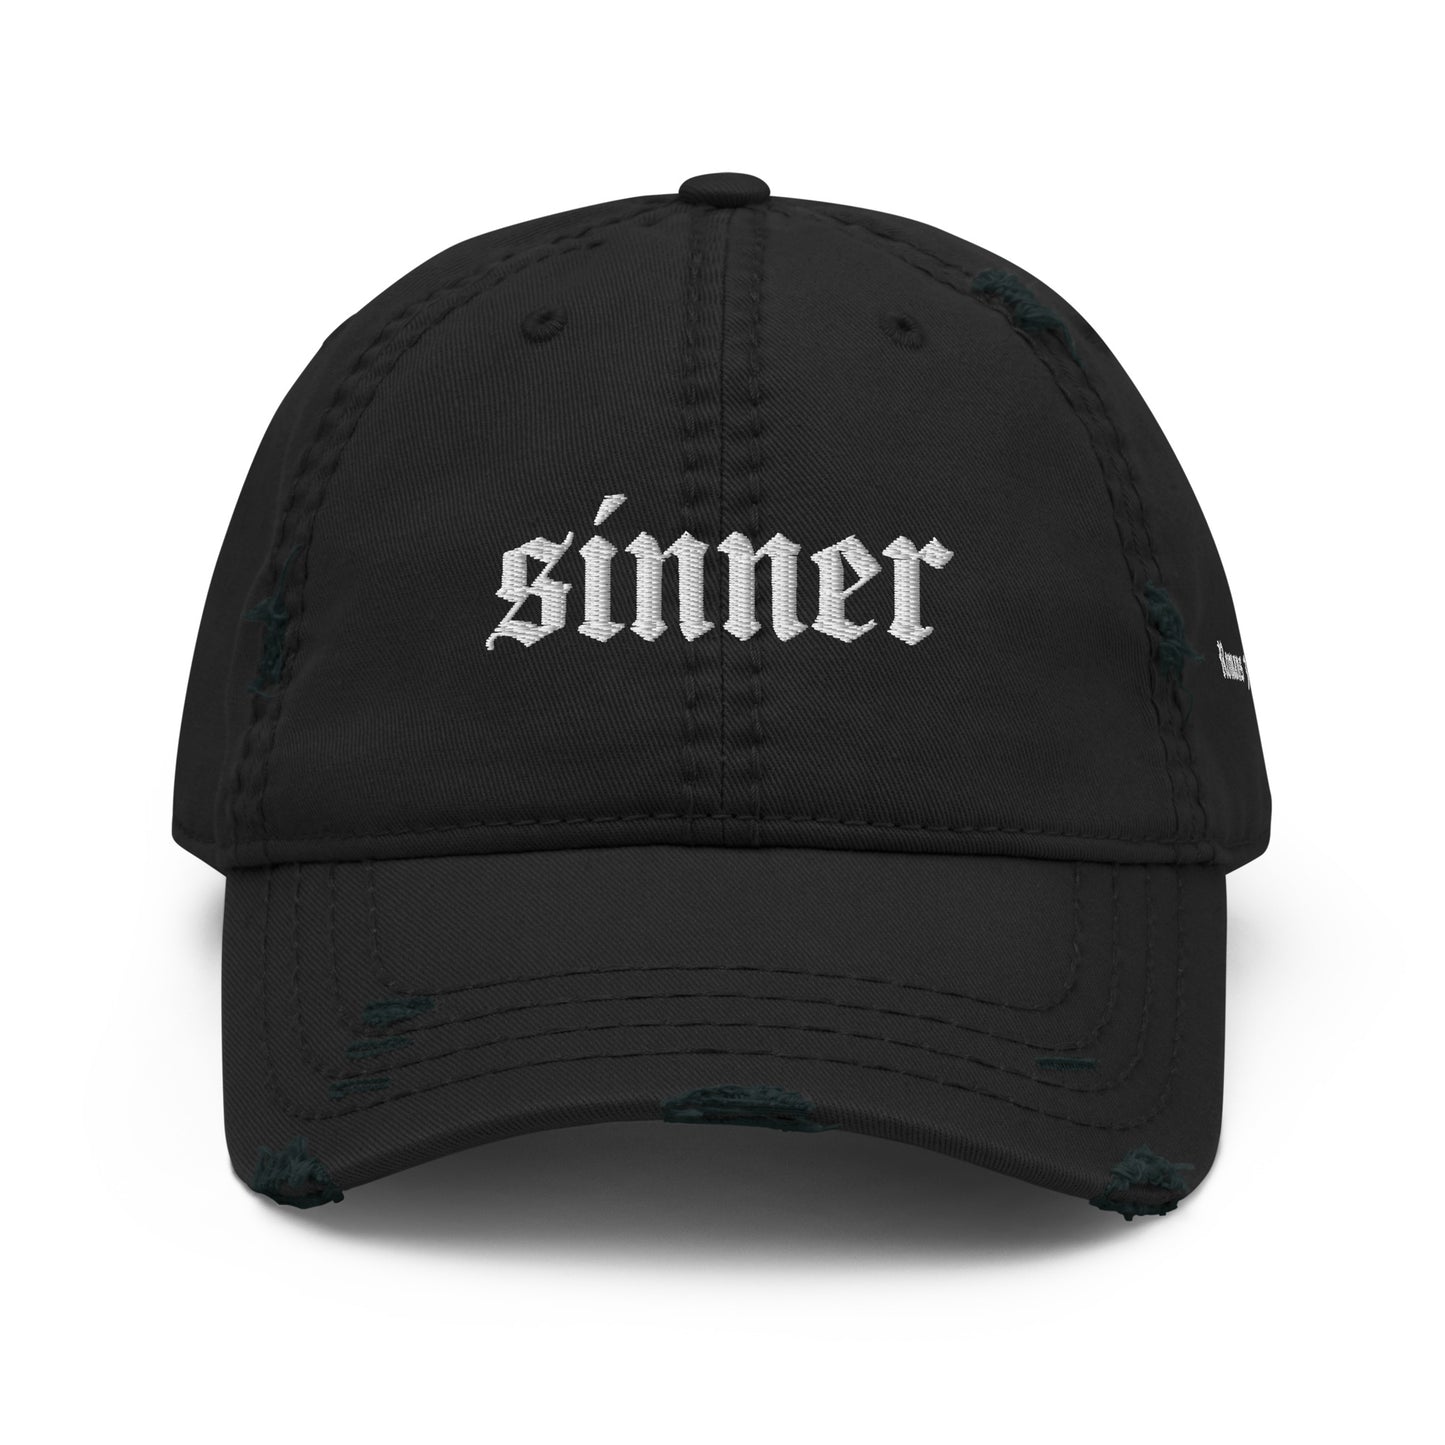 Sinner Distressed Dad Hat